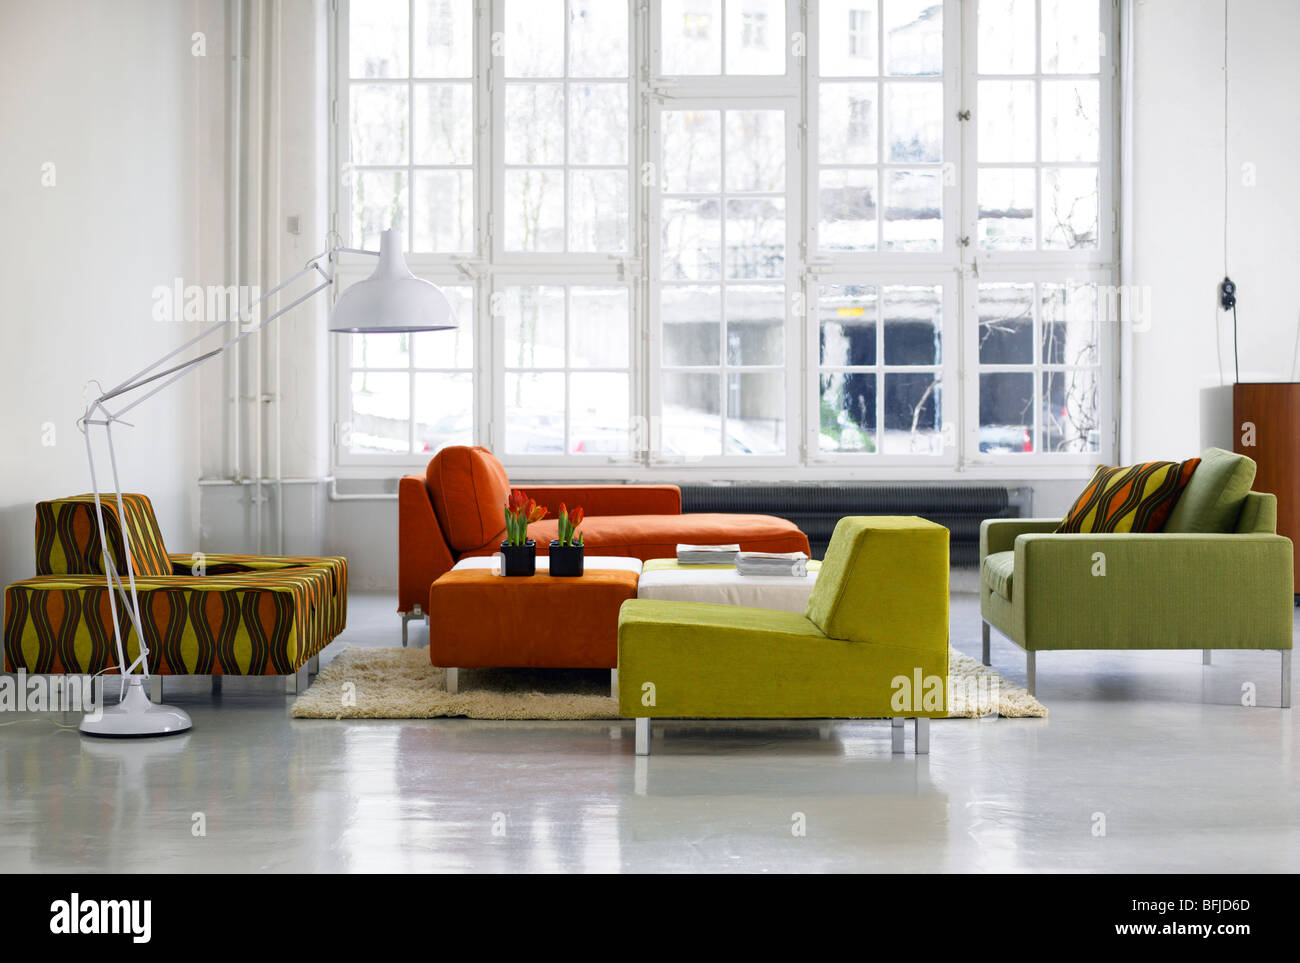 Un groupe d''un canapé et de fauteuils, la Suède. Banque D'Images